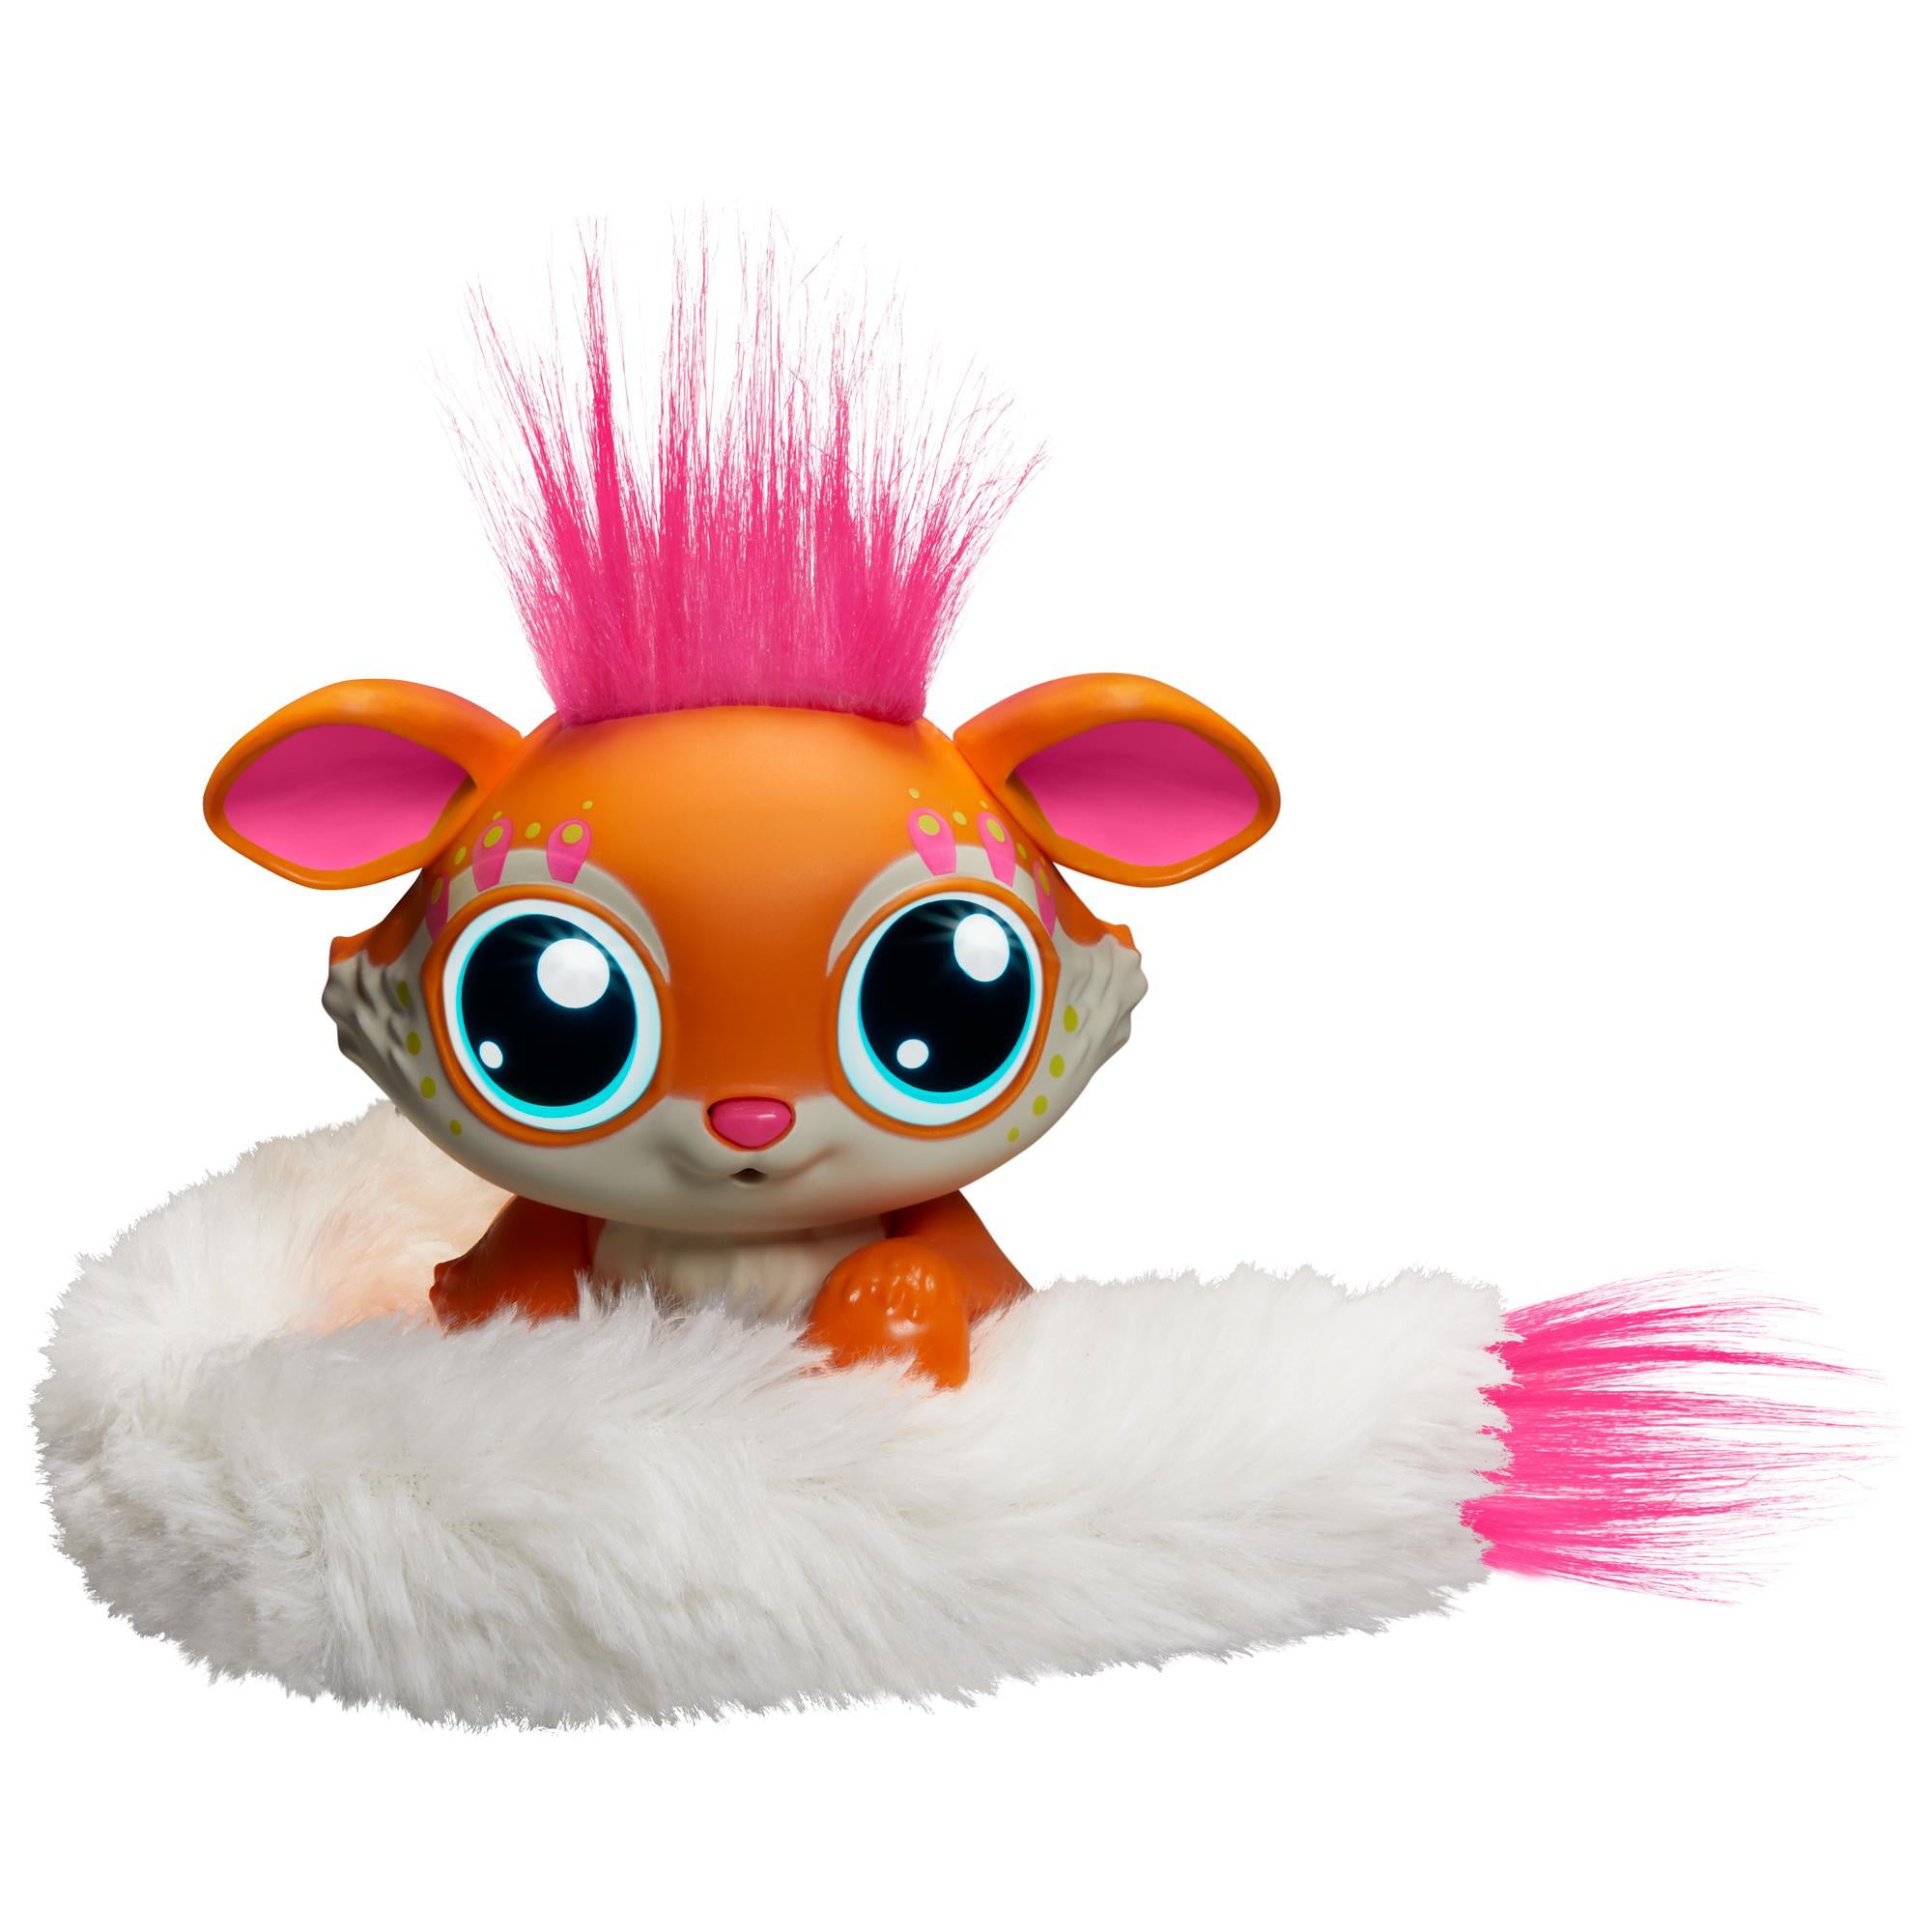 Mattel Lil'Gleemerz Interactive Toy Figure for sale online 